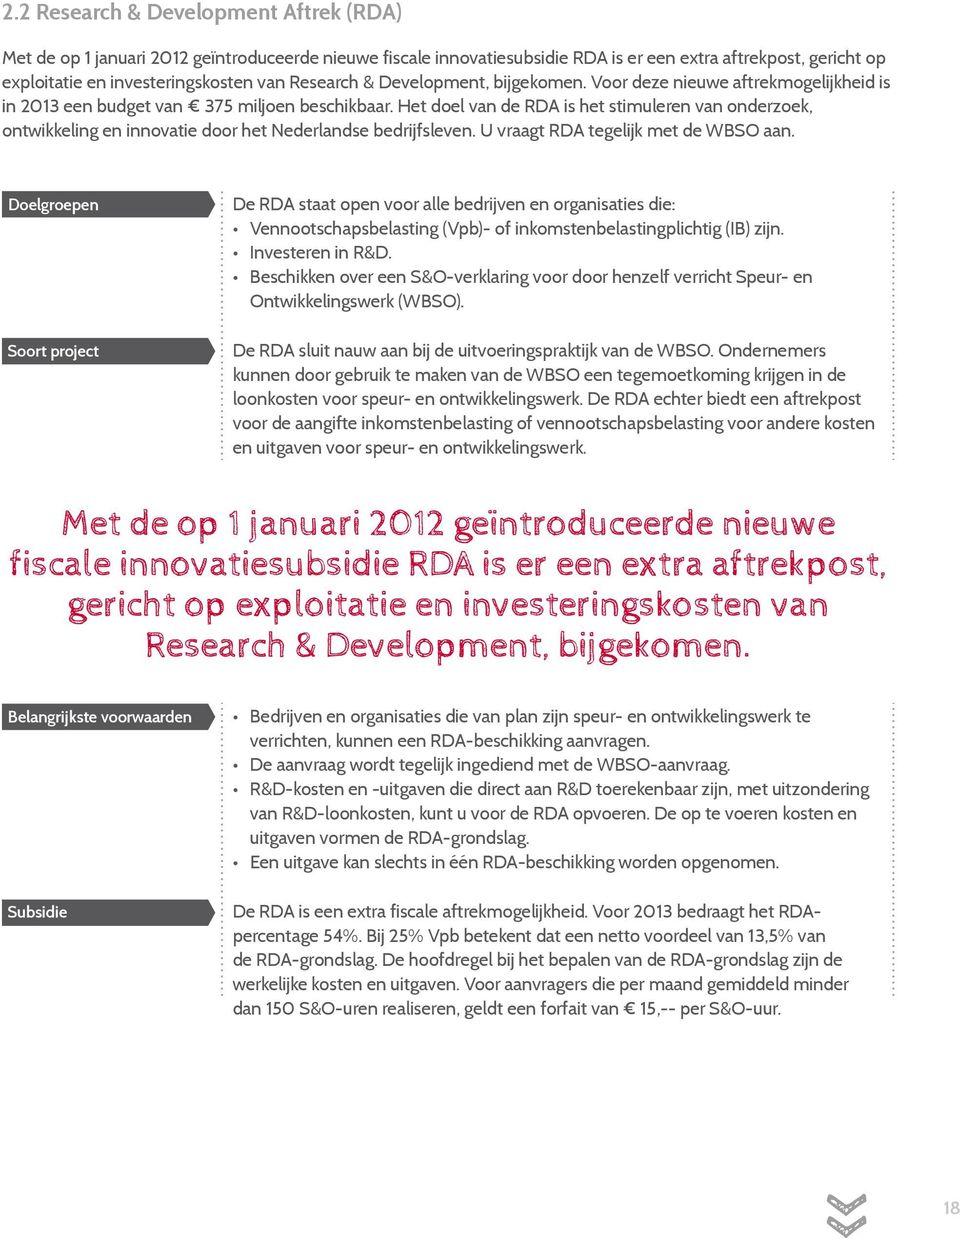 Het doel van de RDA is het stimuleren van onderzoek, ontwikkeling en innovatie door het Nederlandse bedrijfsleven. U vraagt RDA tegelijk met de WBSO aan.